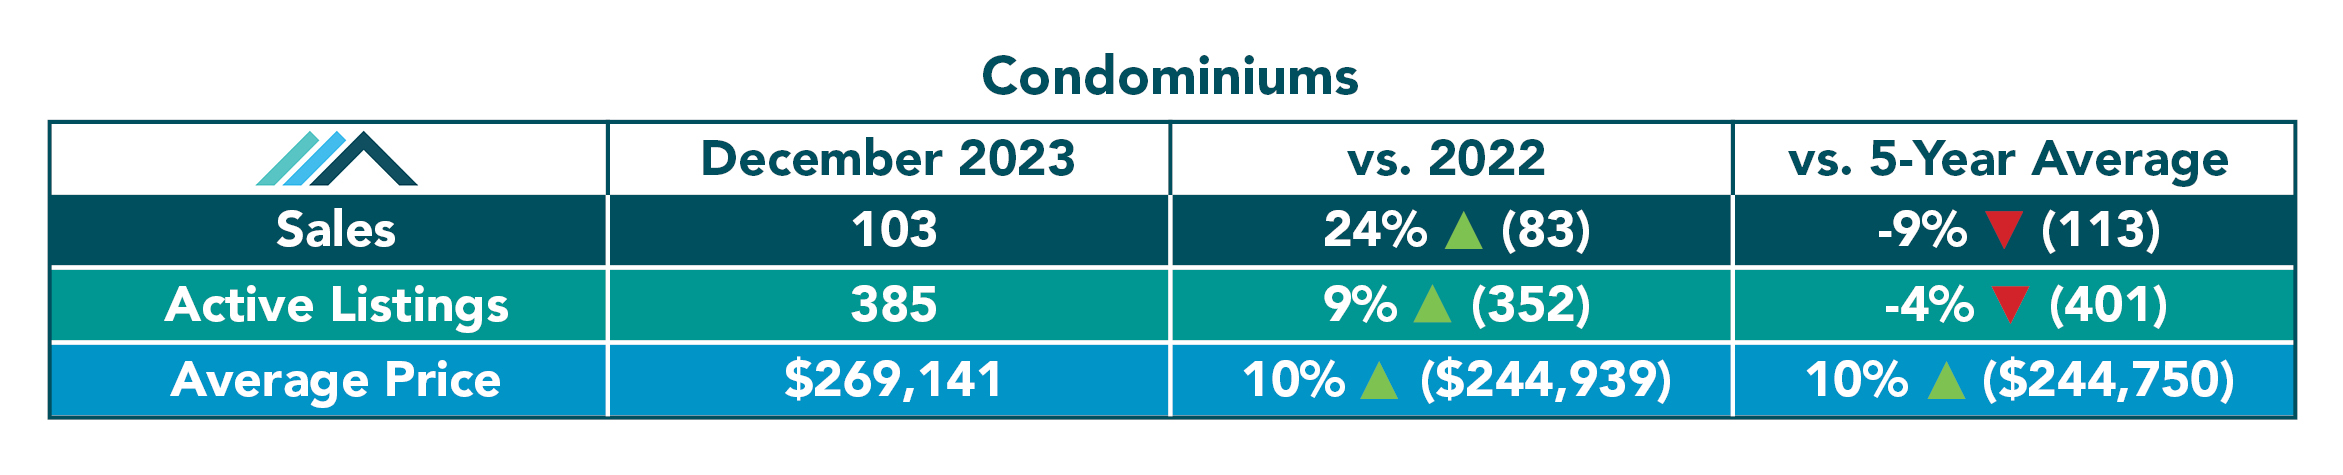 Condominium Tables December 2023